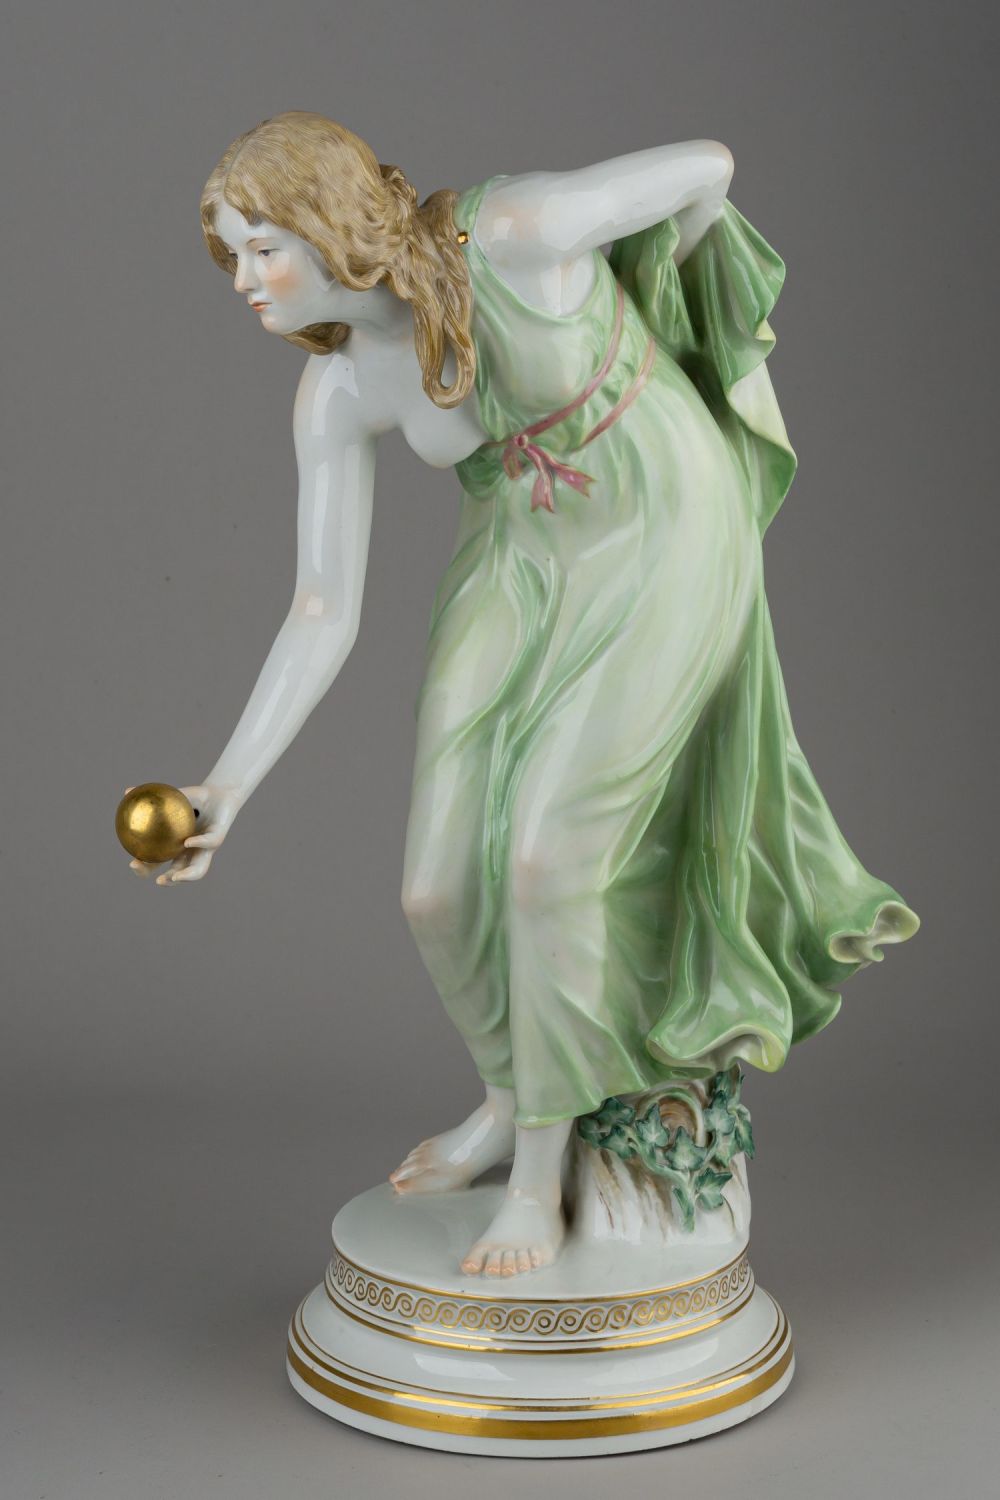 (Мейсен) Скульптура «Девушка, играющая в мяч».<br>Германия, мануфактура Meissen, автор модели Вальтер Шотт, 1945-1947 годы.